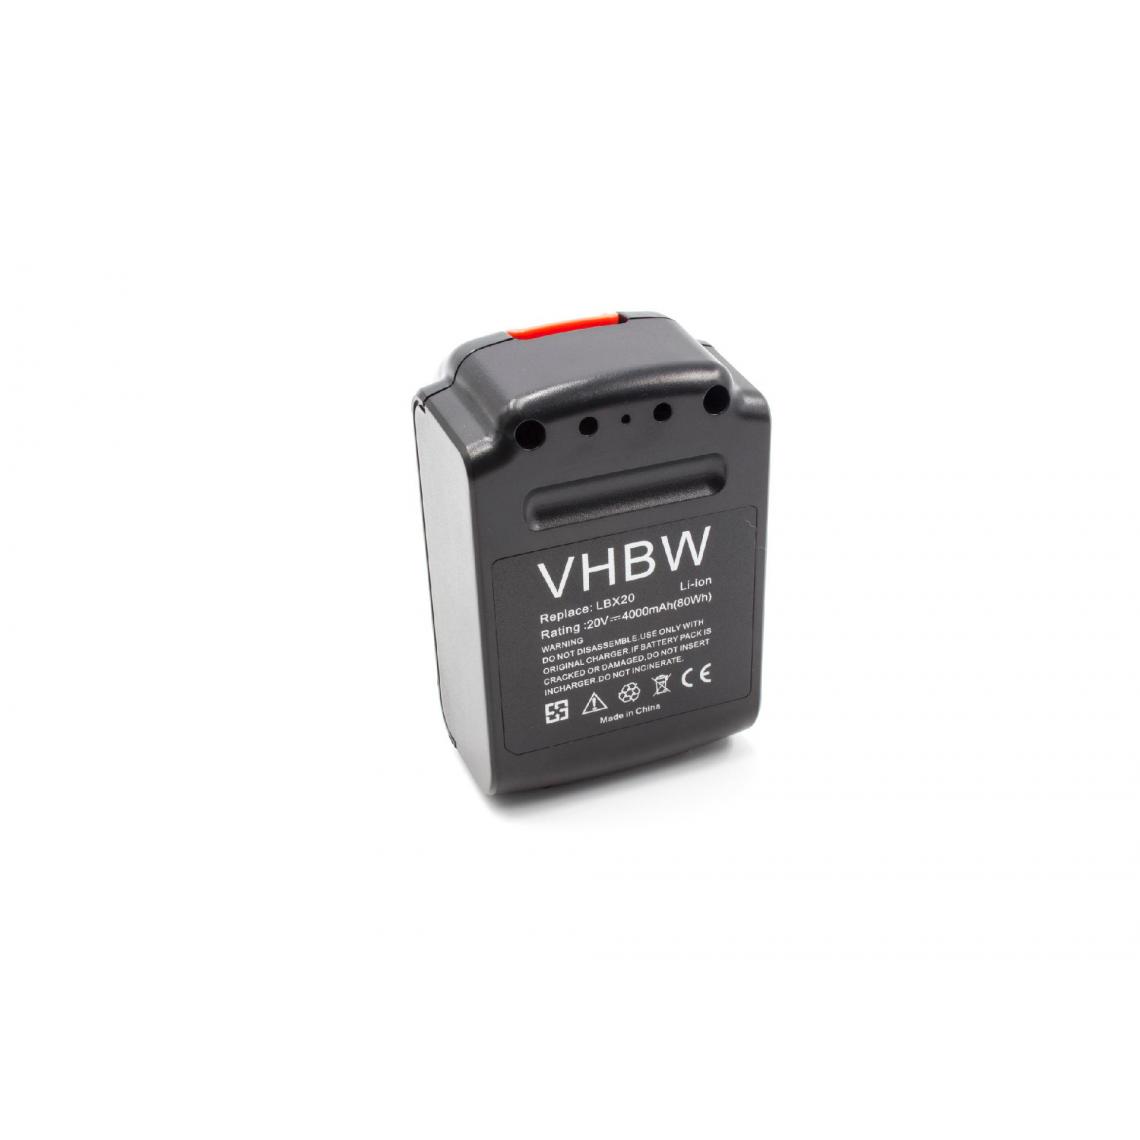 Vhbw - vhbw Batterie remplacement pour Black & Decker LBX20, LBXR20 pour outil électrique (4000mAh Li-ion 20V) - Clouterie